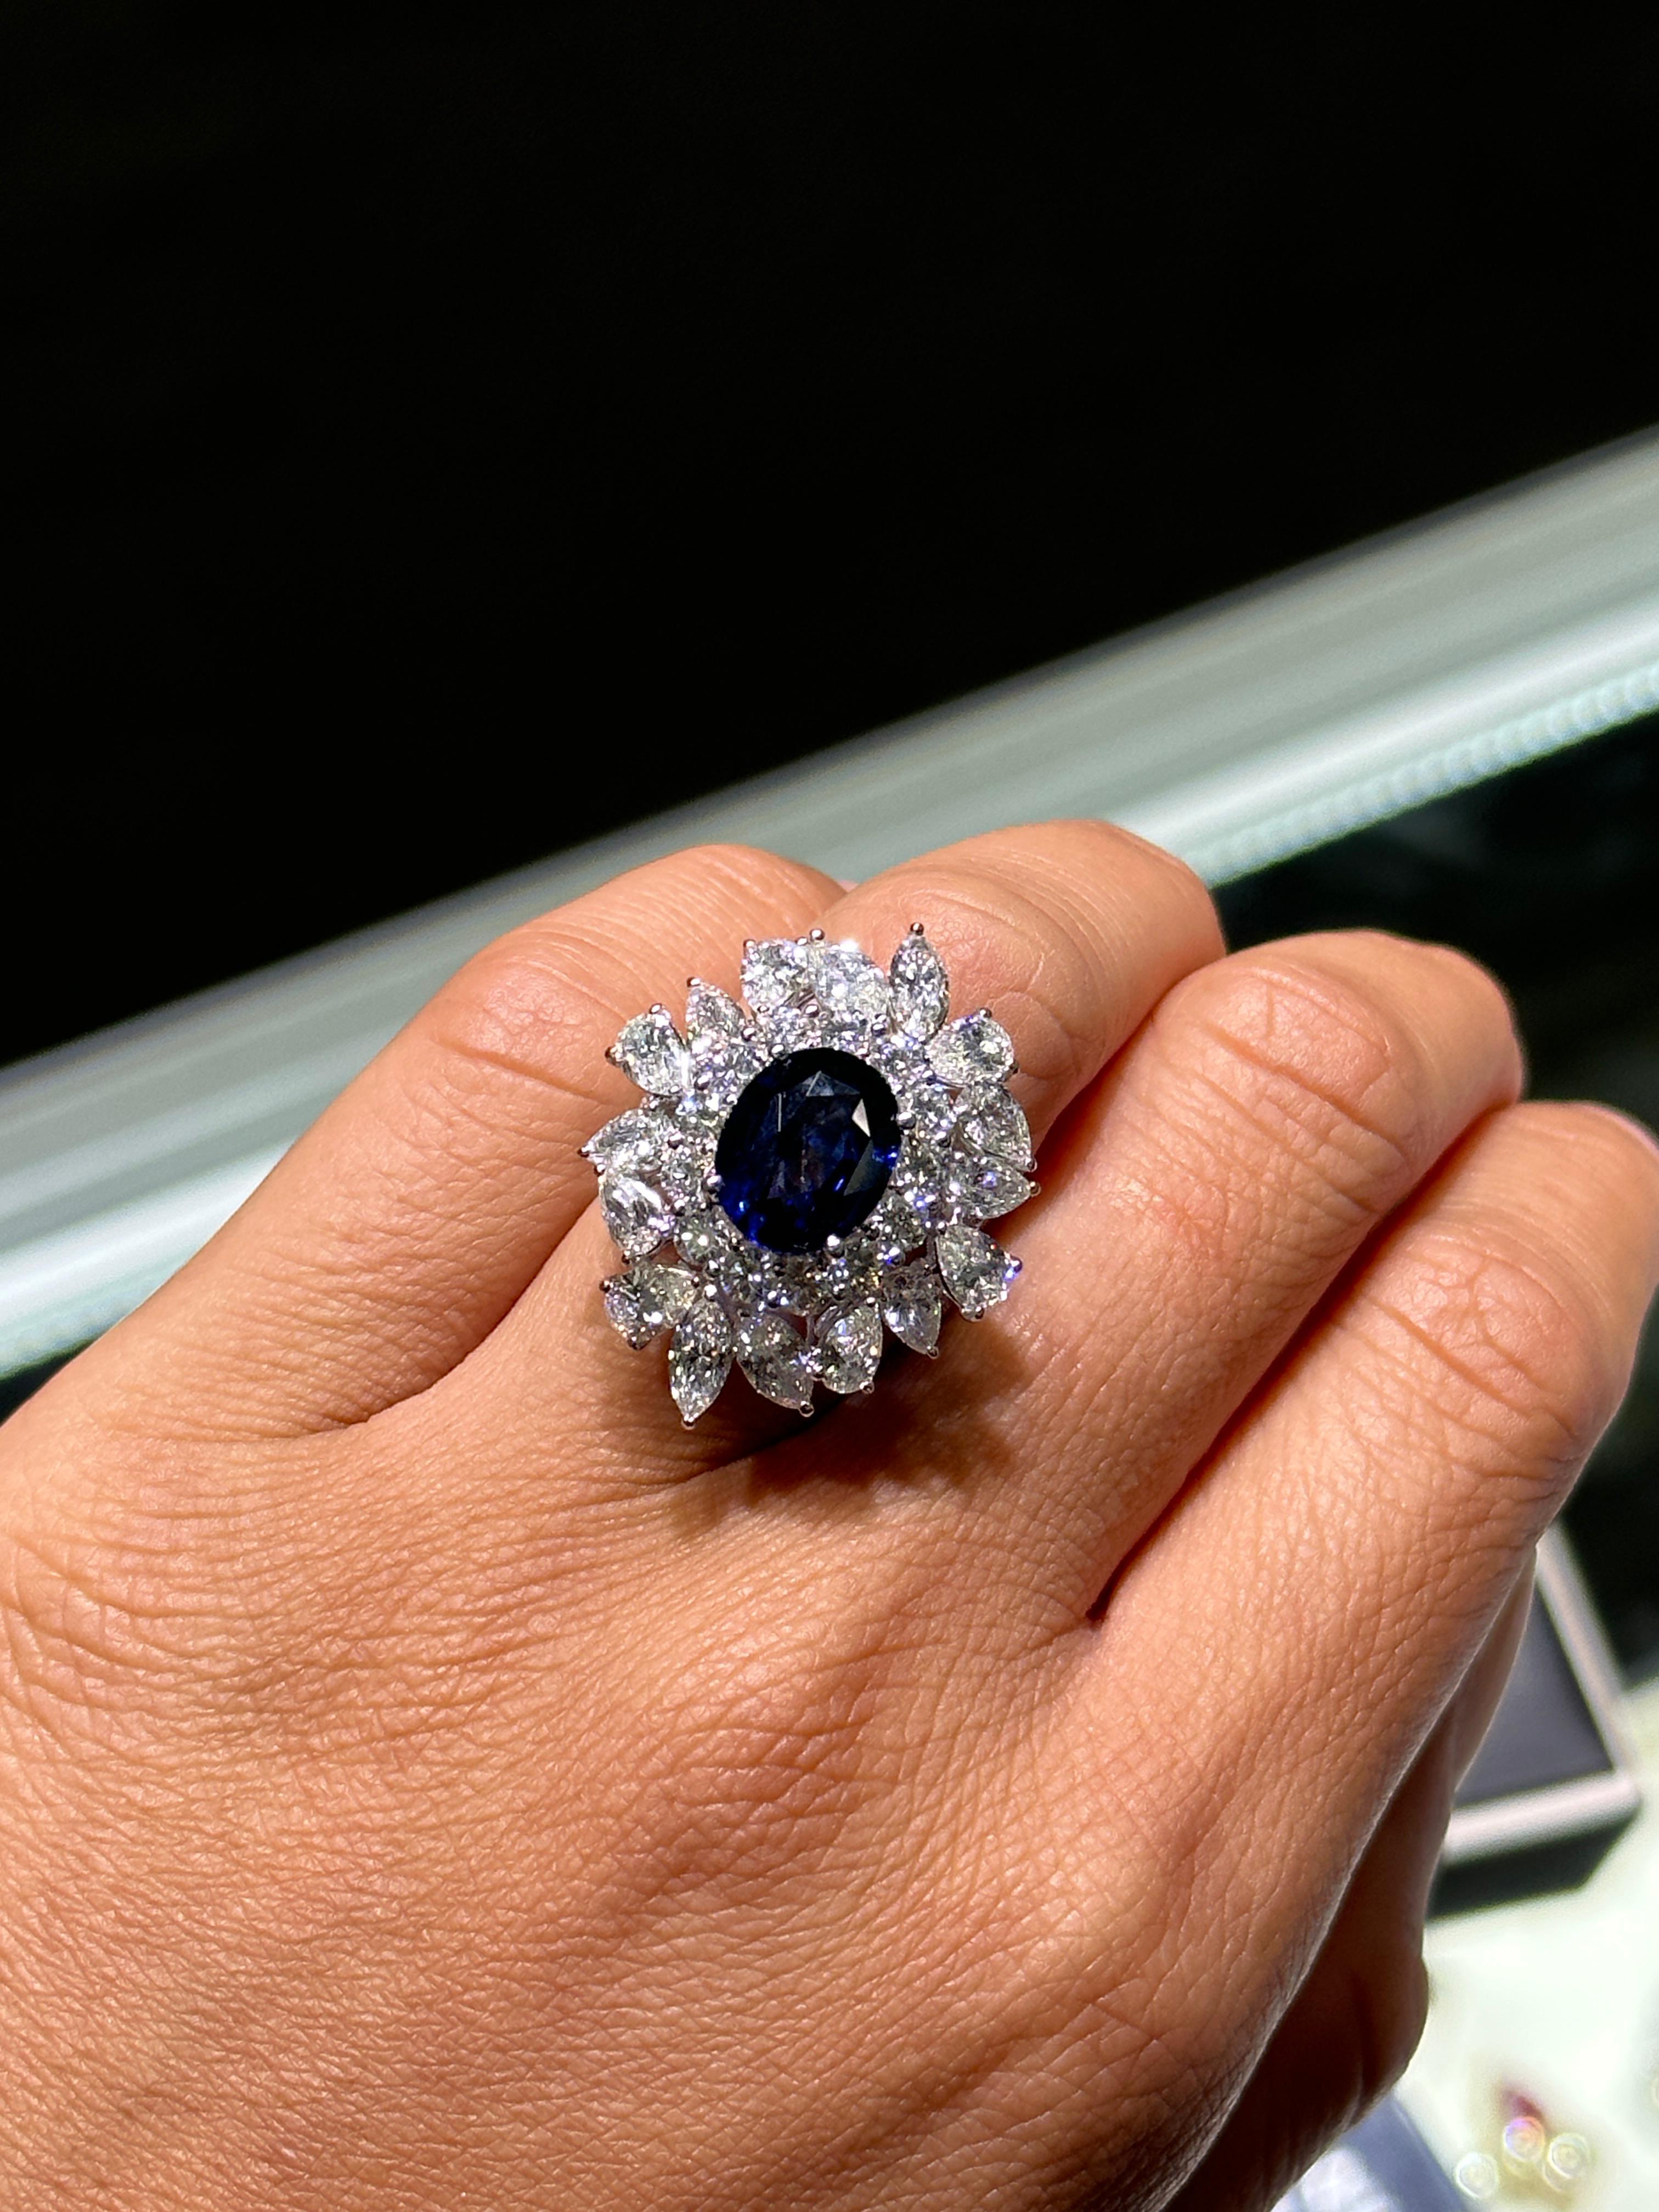 L'article suivant est une bague en or 18KT avec saphir bleu de Ceylan et diamant. La bague est composée de superbes saphirs bleus spectaculairement sertis et entourés de magnifiques diamants de taille fantaisie !!! A.C.C. env. 10.75CTS !!! Cette